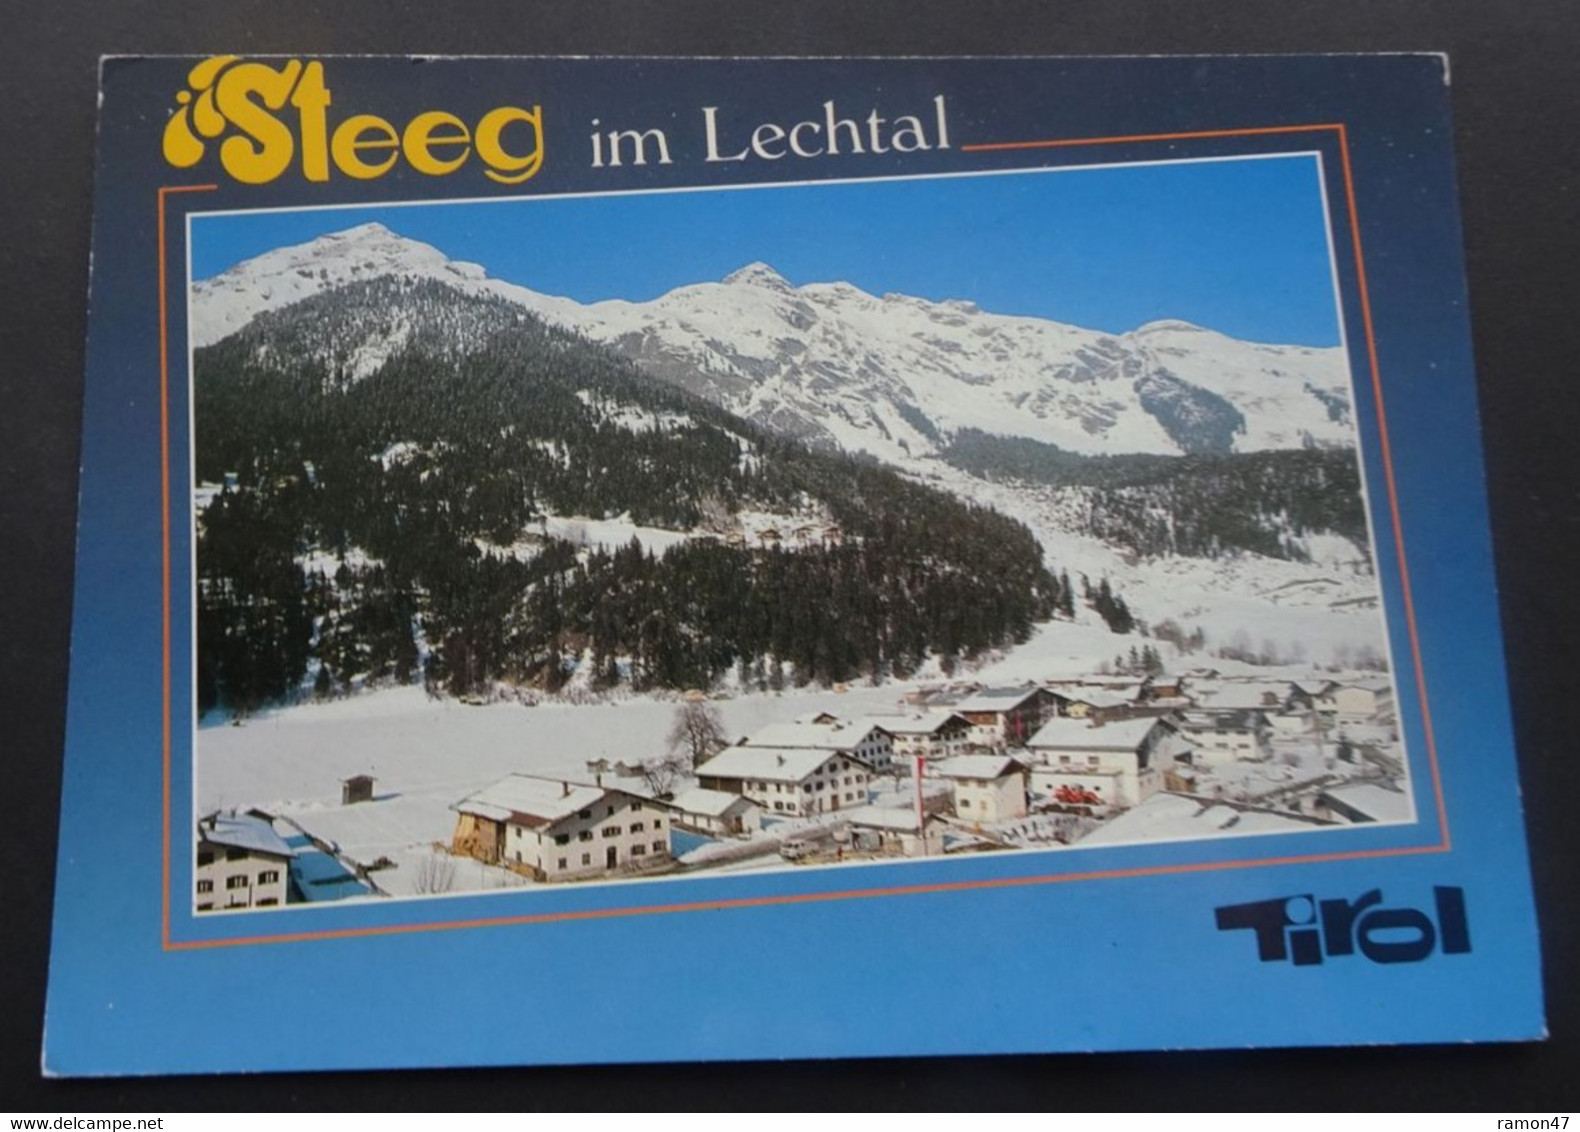 Steeg Im Lechtal - Copyright By Franz Milz Verlag, Reutte - Lechtal